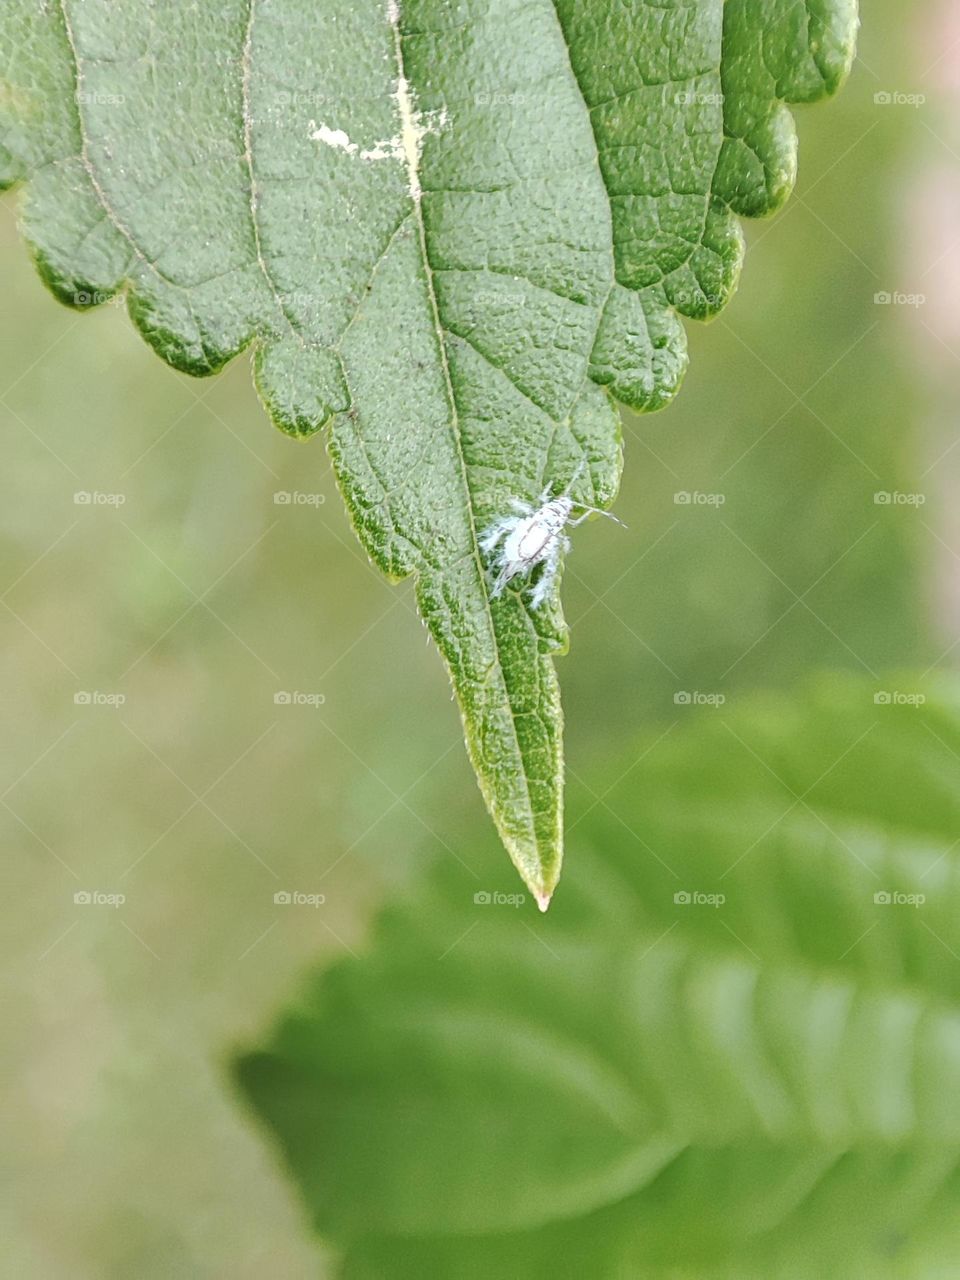 Whit bug on leaf